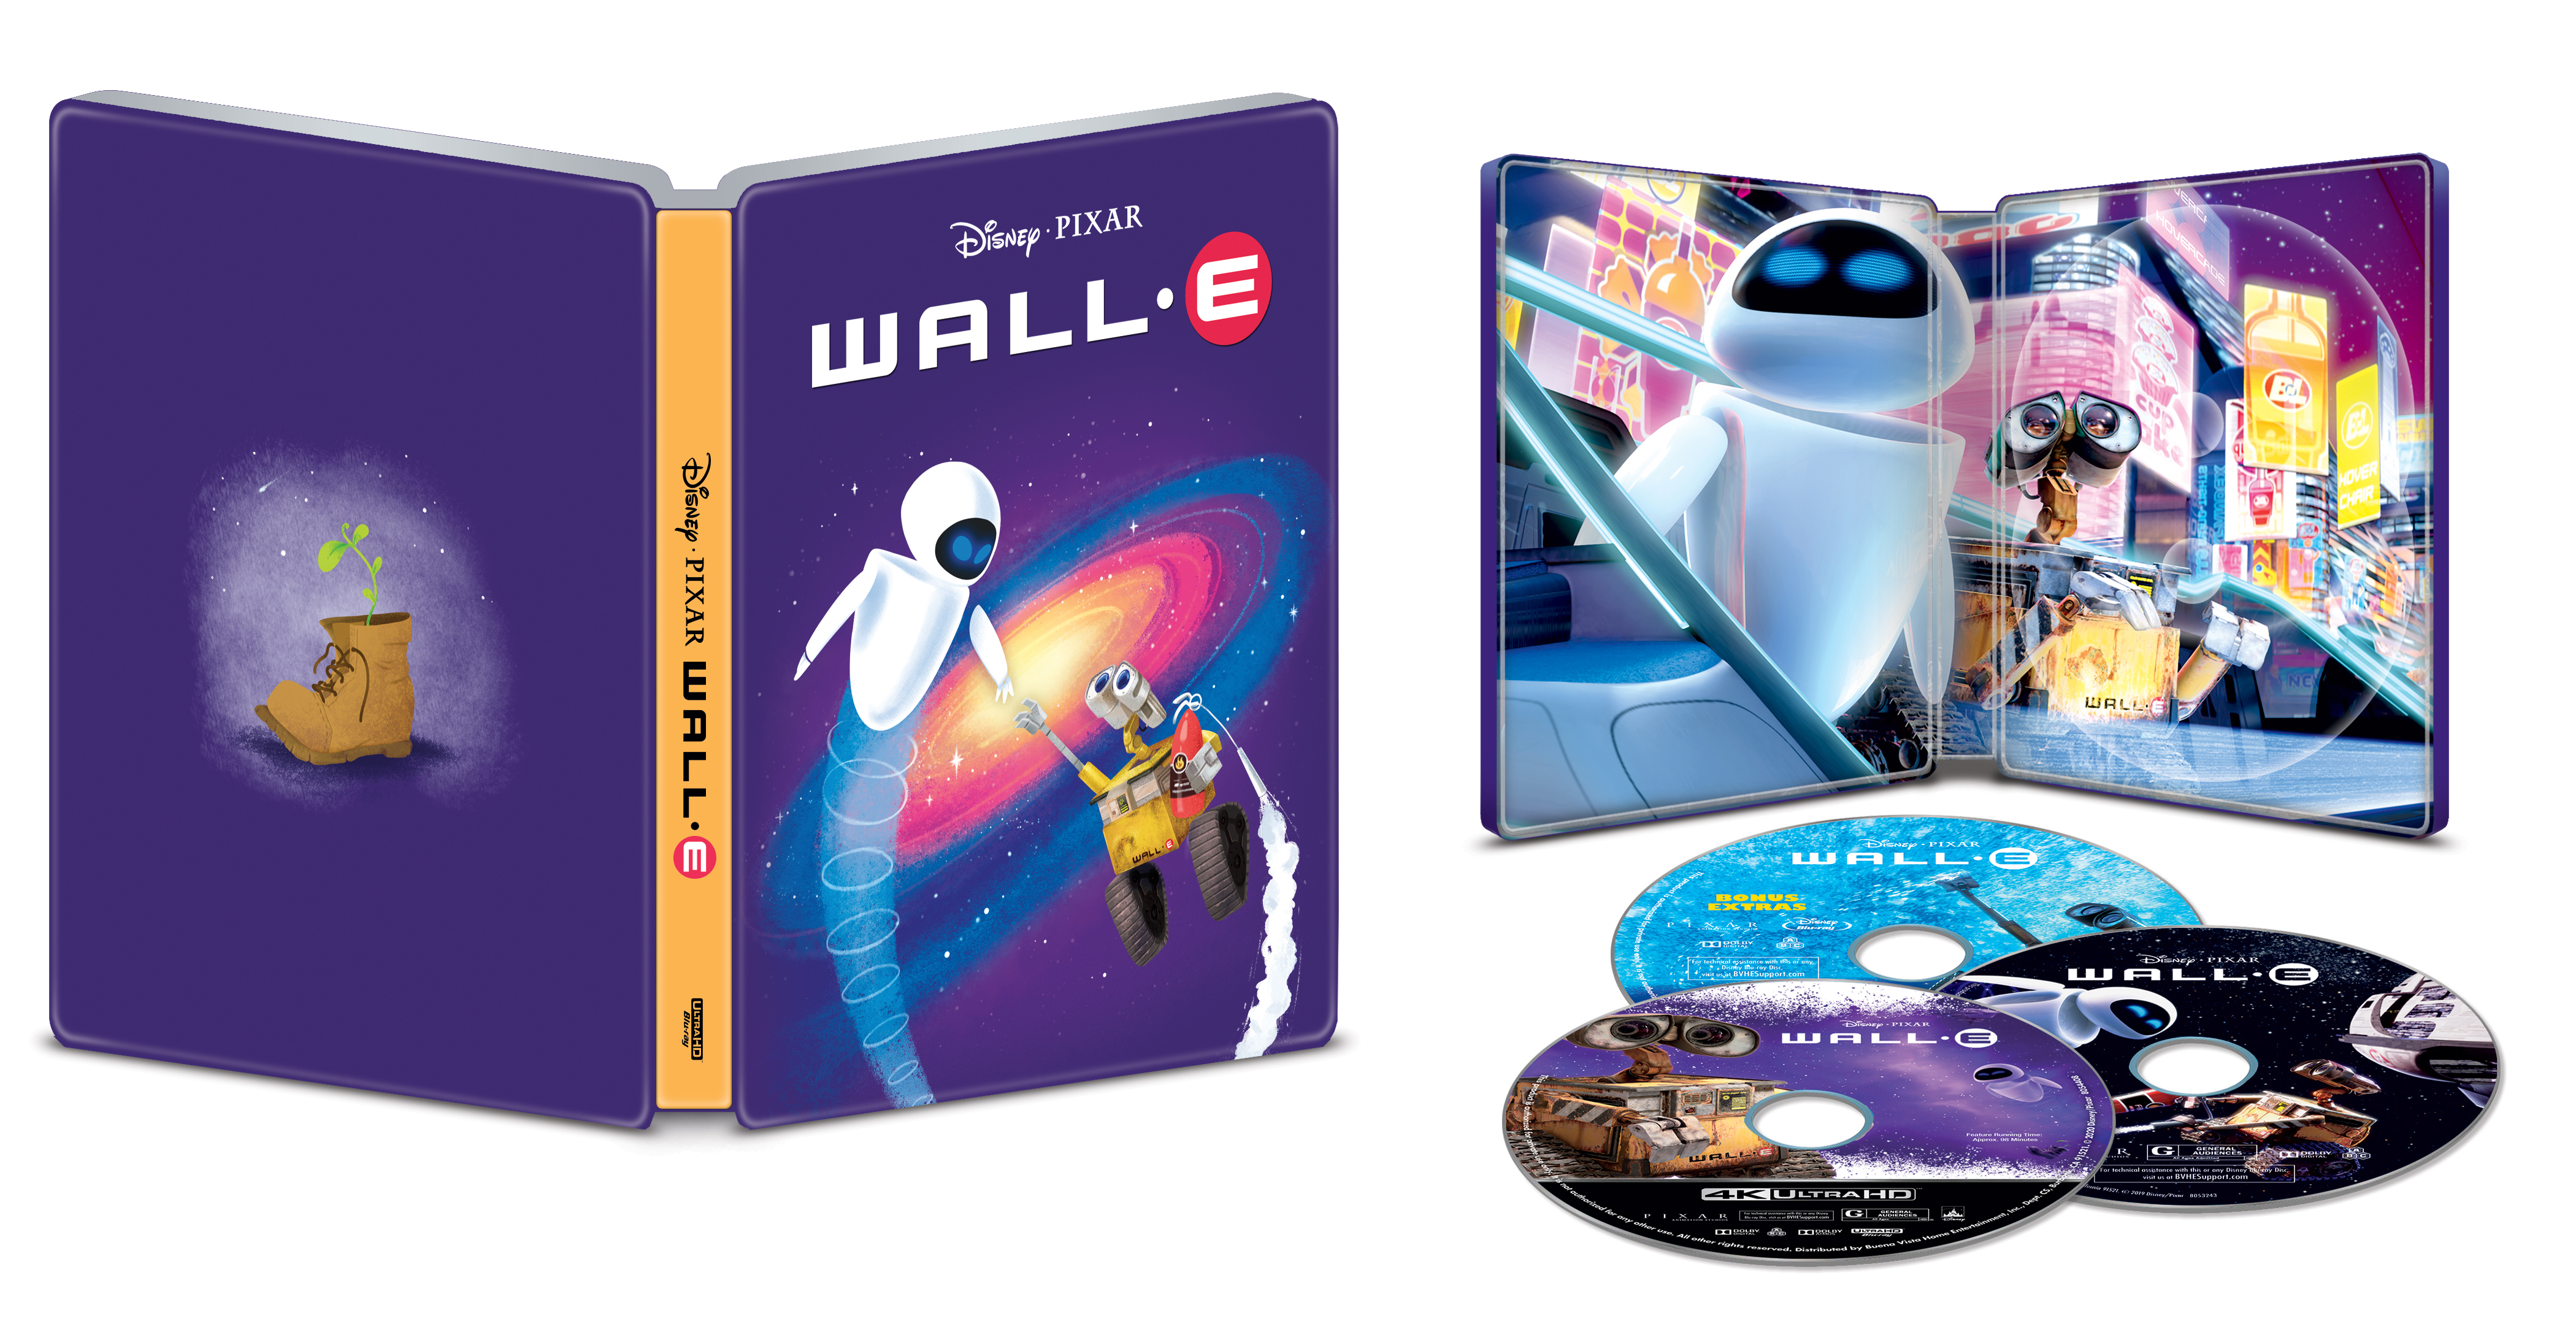 Wall-E [SteelBook] [Includes Digital Copy] [4K Ultra HD Blu-ray/Blu-ray] [Only @ Best Buy] [2008]